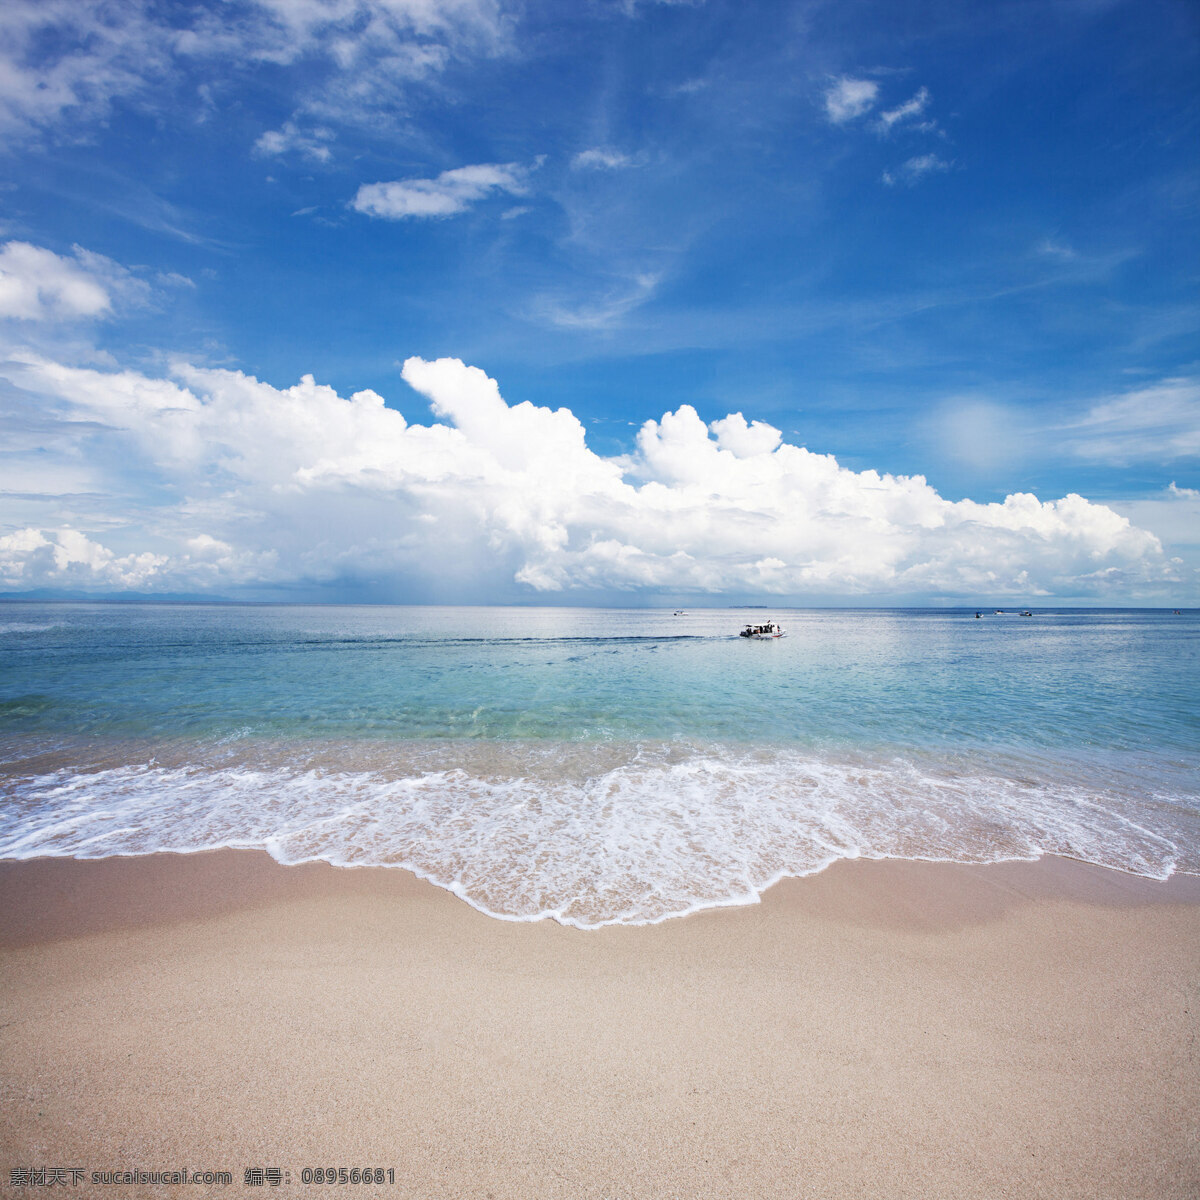 海滩 大海 天空 蓝色 海水 沙滩 旅游摄影 自然风景